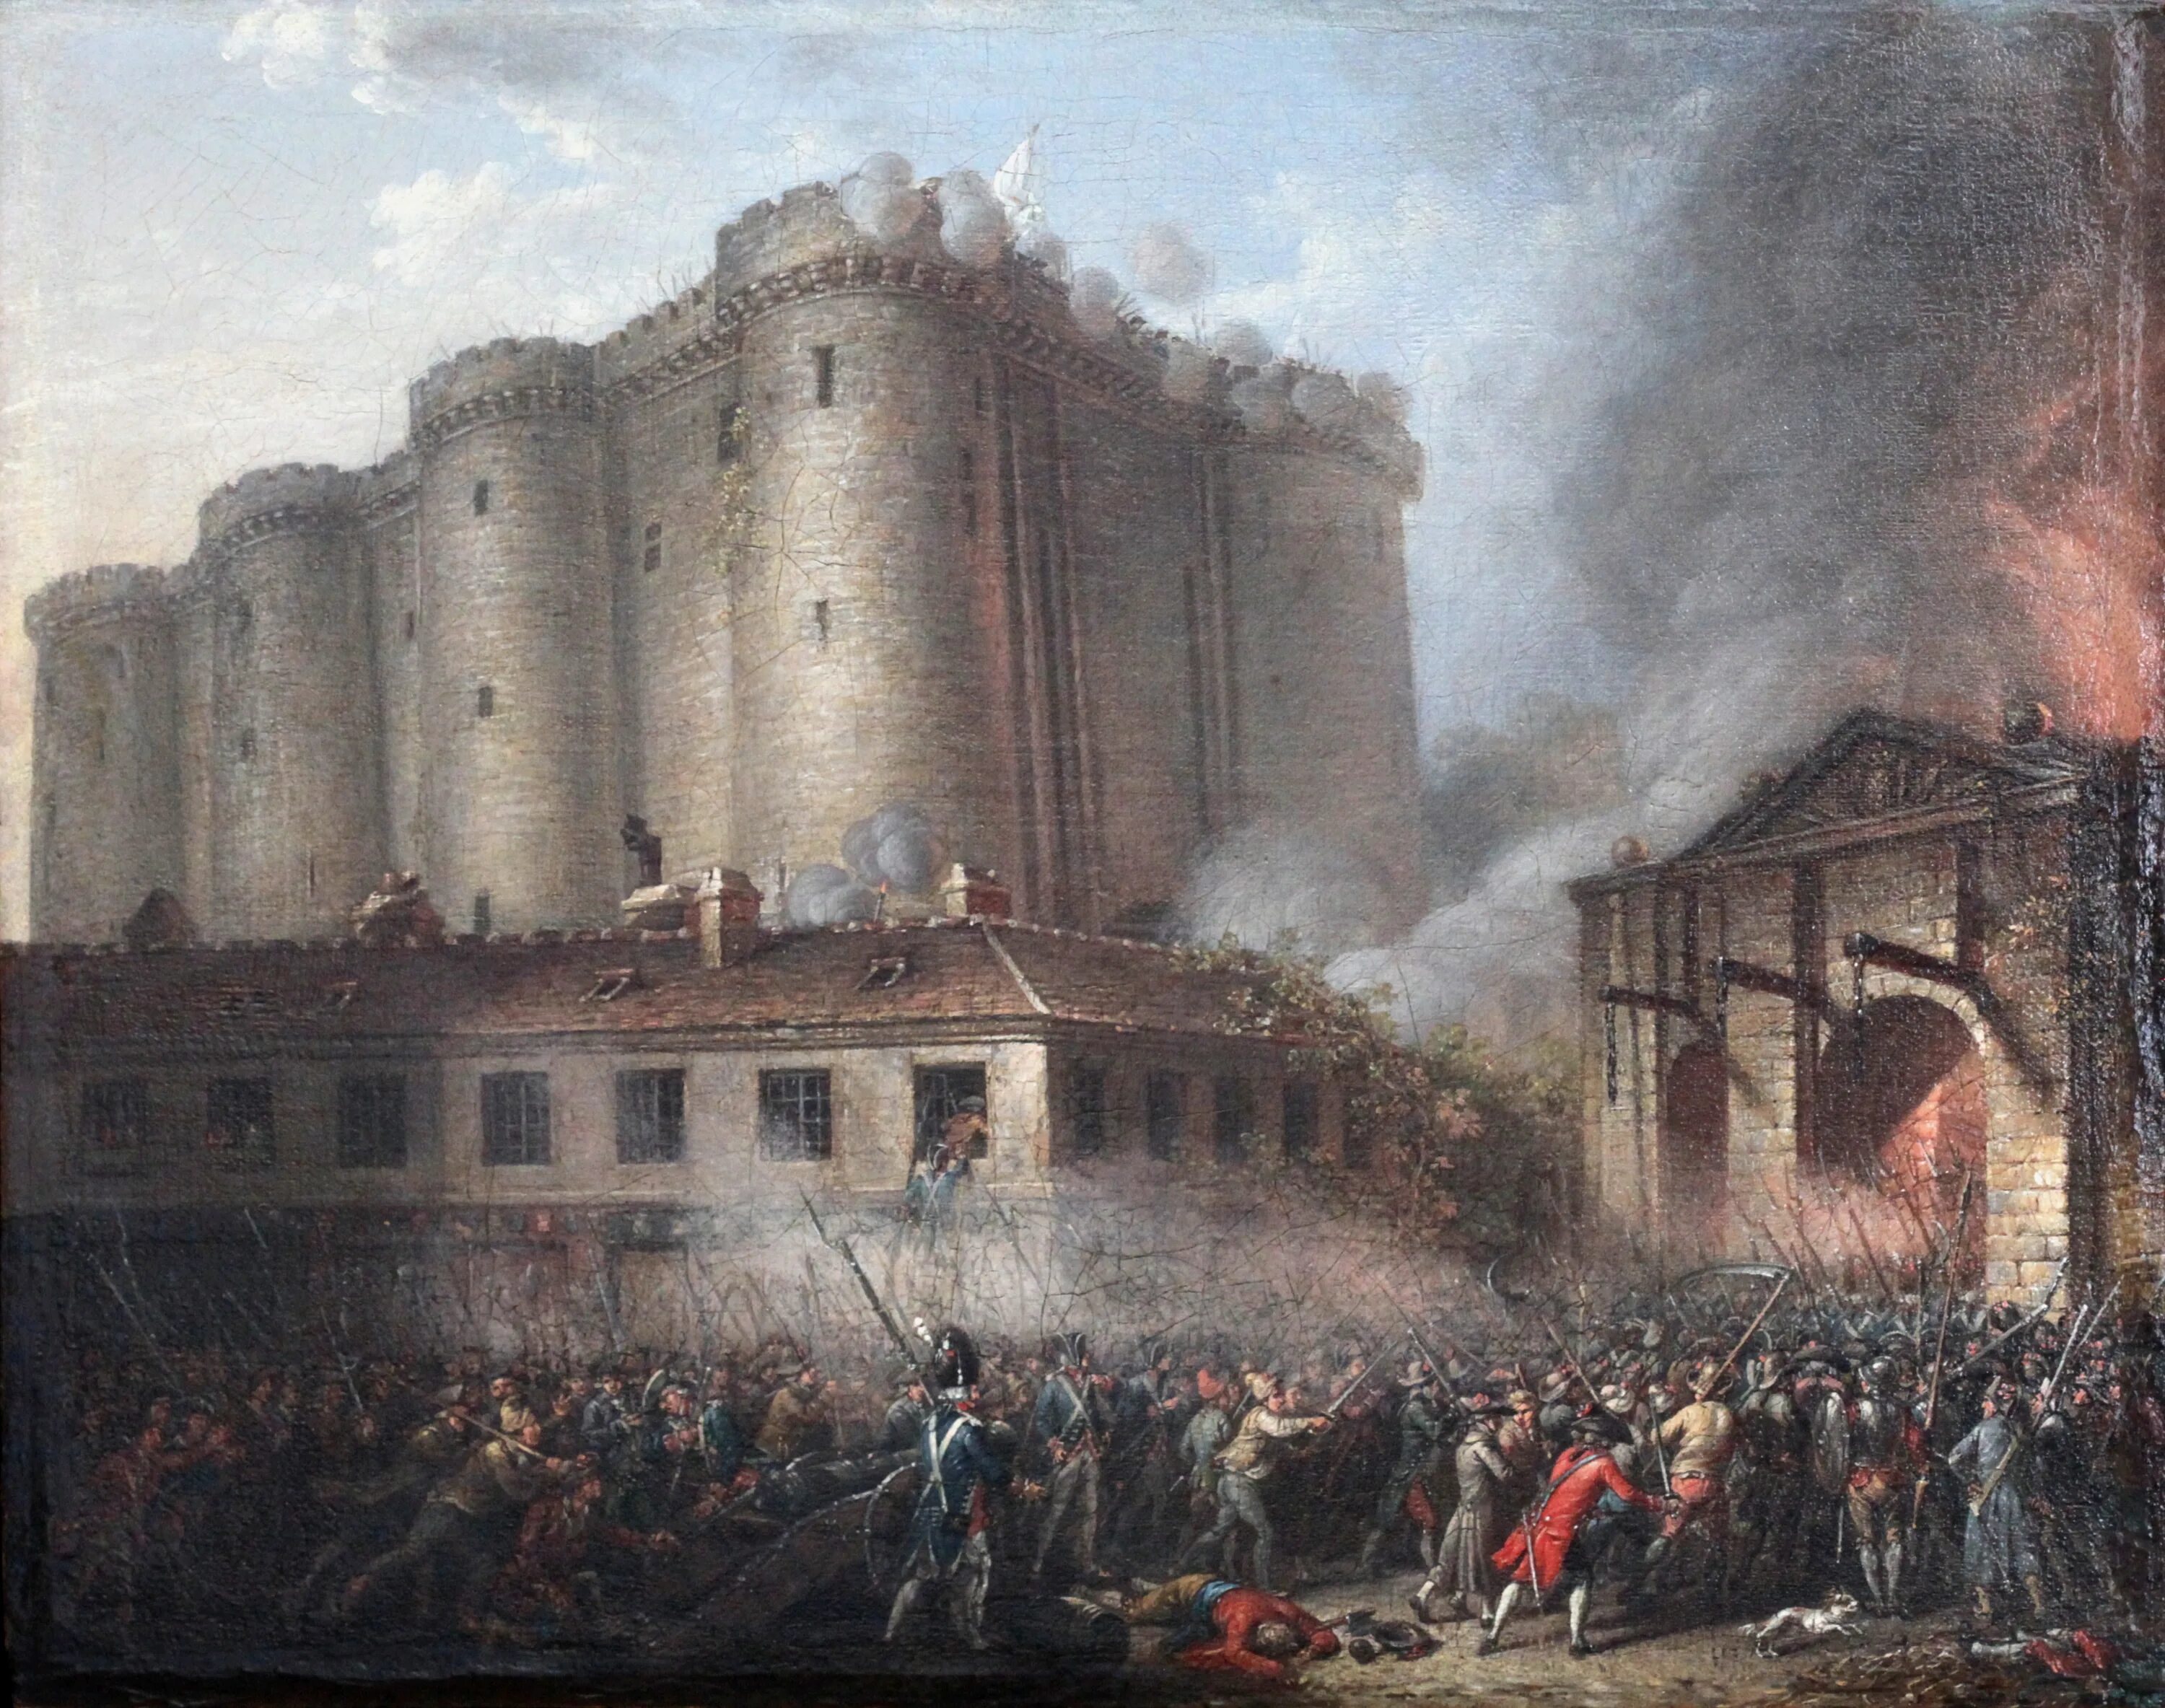 Пал восстань. Штурм Бастилии 14 июля 1789 года. Великая французская революция взятие Бастилии. Крепость Бастилия 14 июля 1789. Французская революция взятие Бастилии 1789.